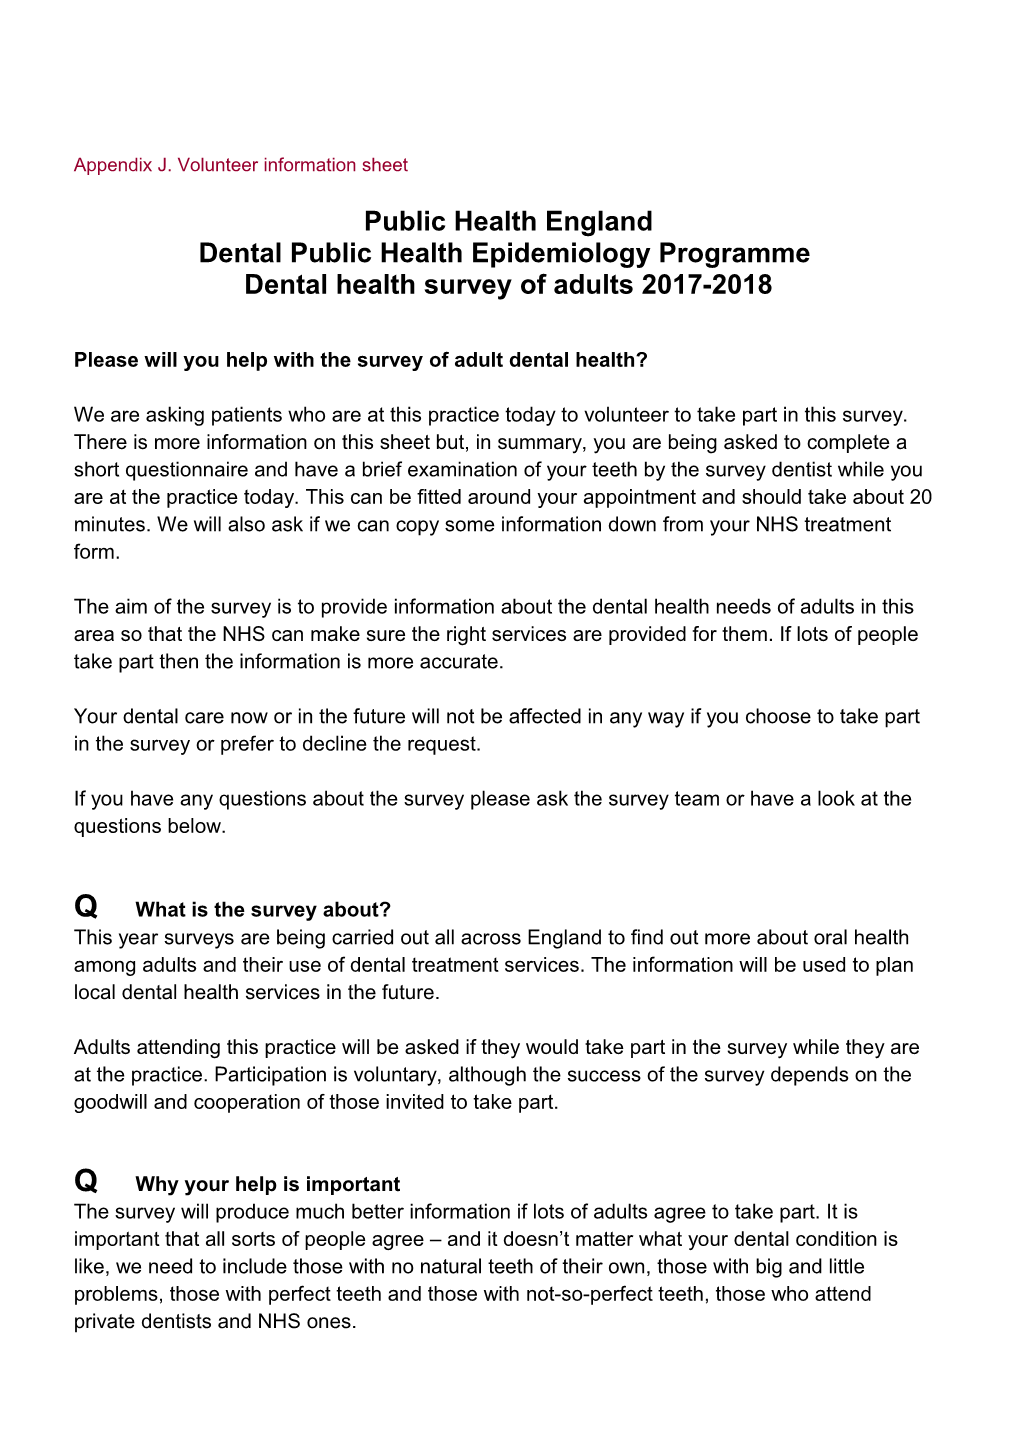 Dental Public Health Epidemiology Programme